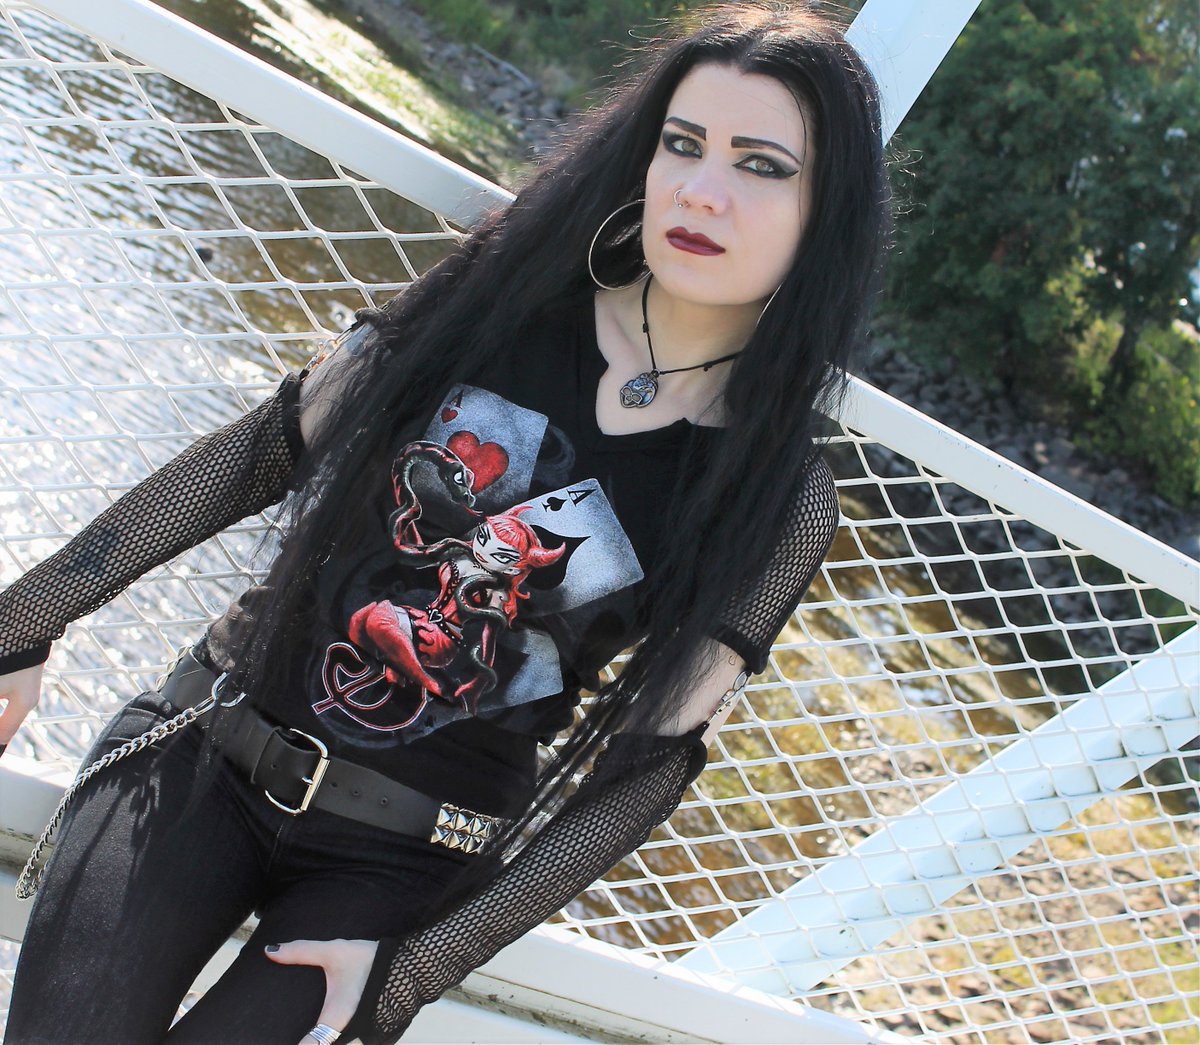 Some of my pictures #goth #metalhead #spiraldirect #poizenindustries #banne...